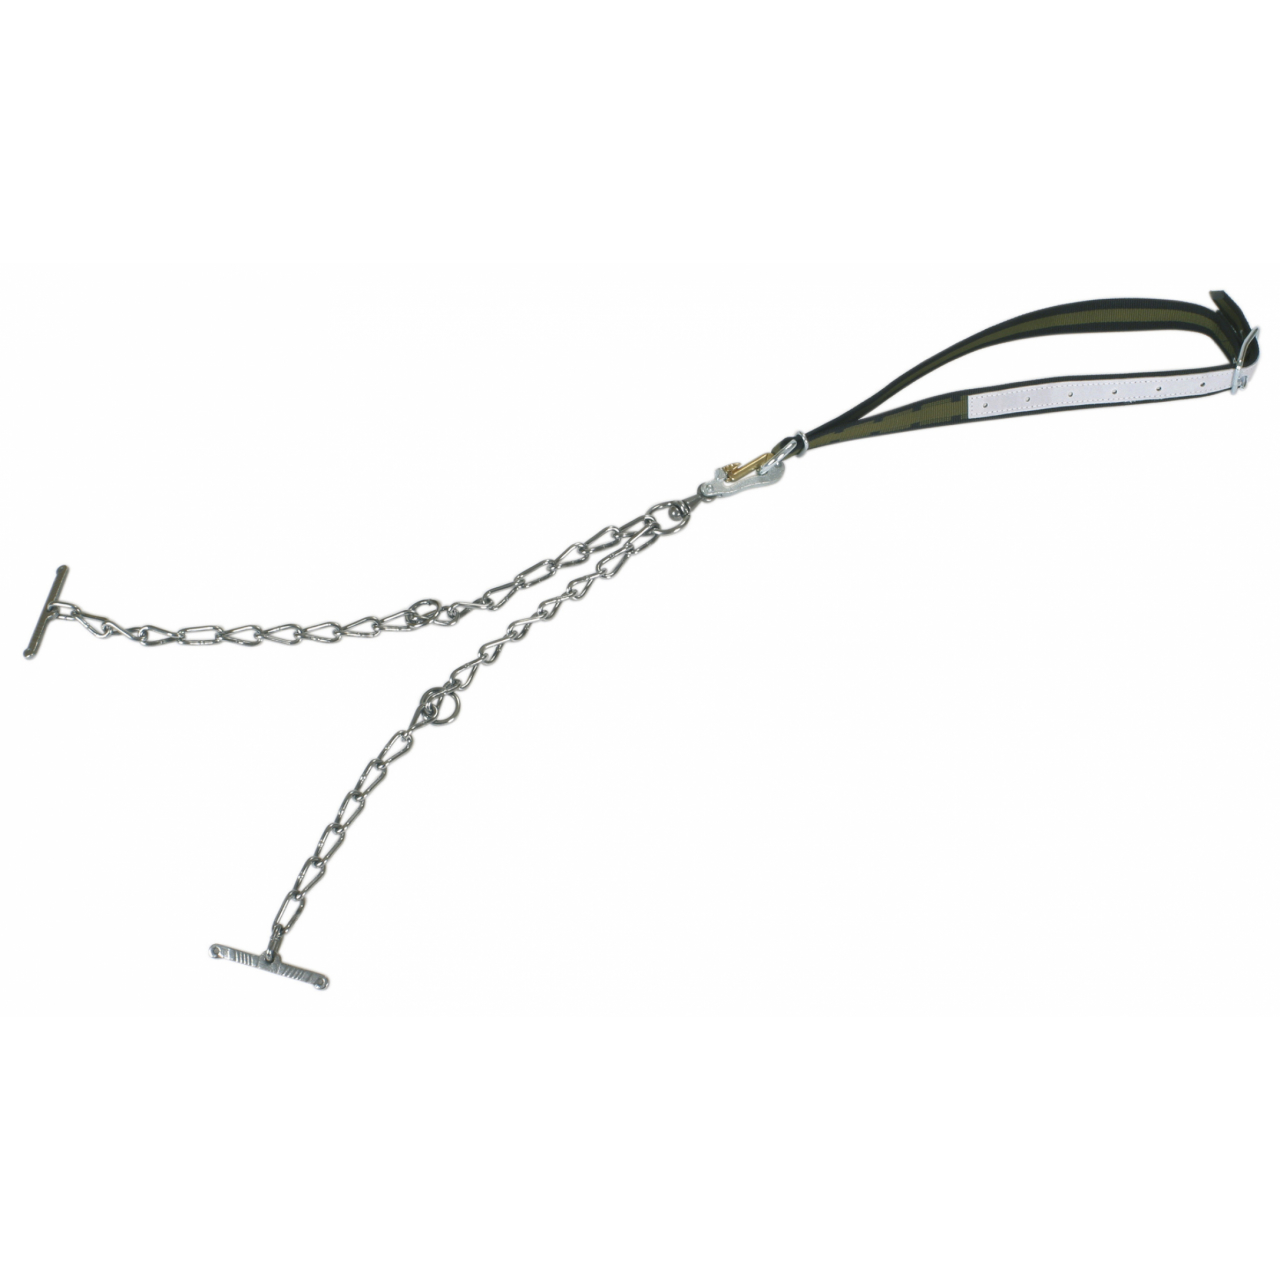 Marhakikötő nyakpánt kettős lánccal, biztonsági karabínerrel - 130 x 4 cm, 6 mm, csúcsminőség